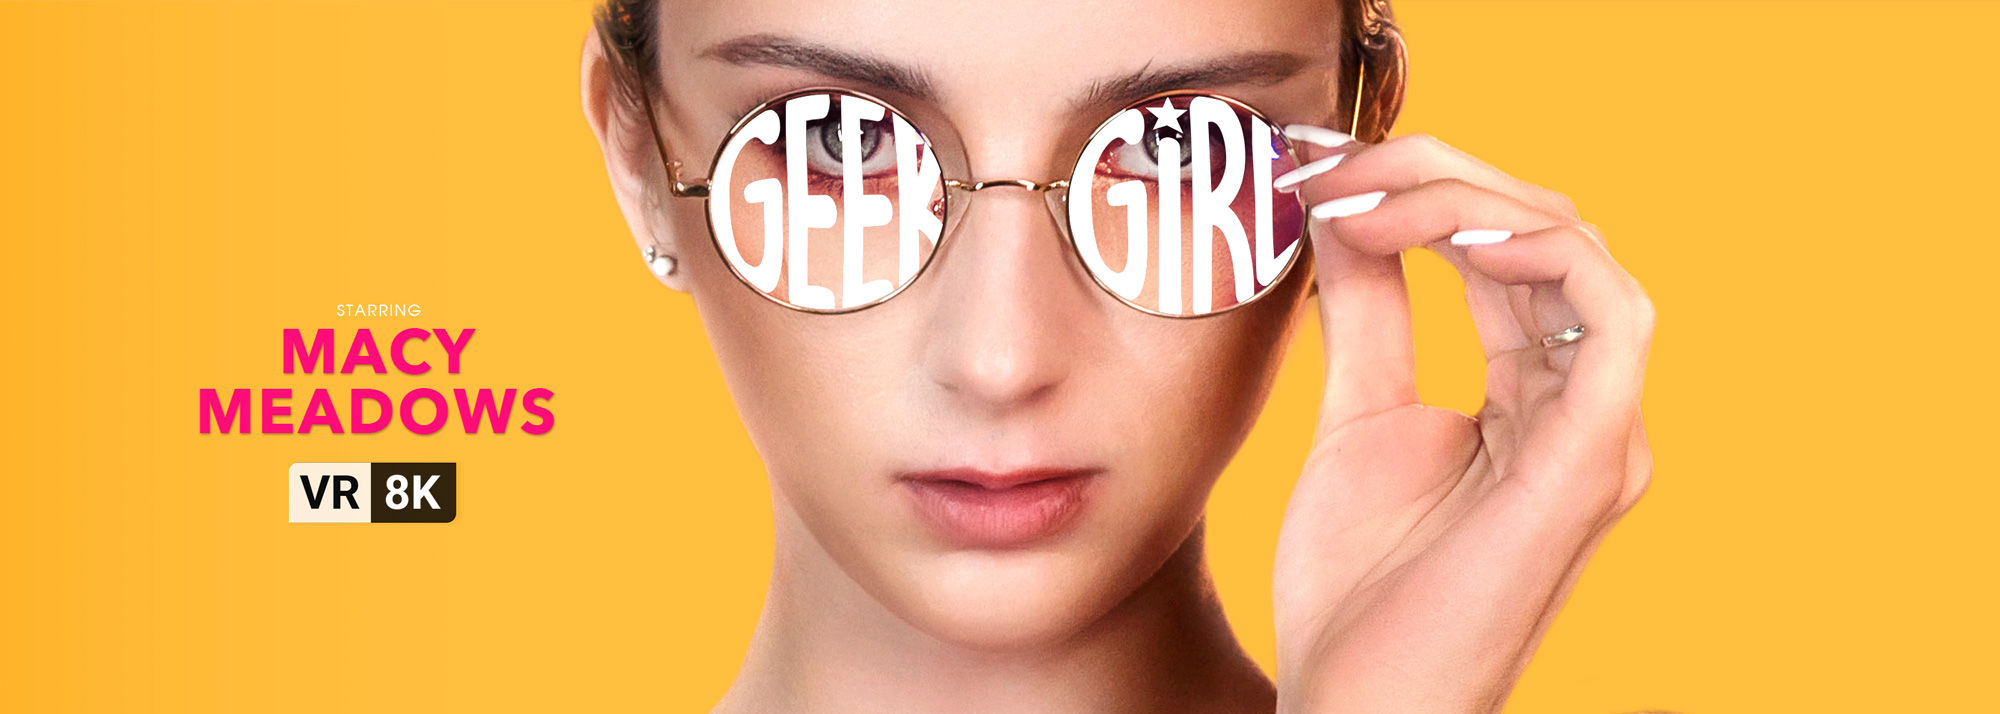 Geek Girl - VR Porn Video, Starring: Macy Meadows